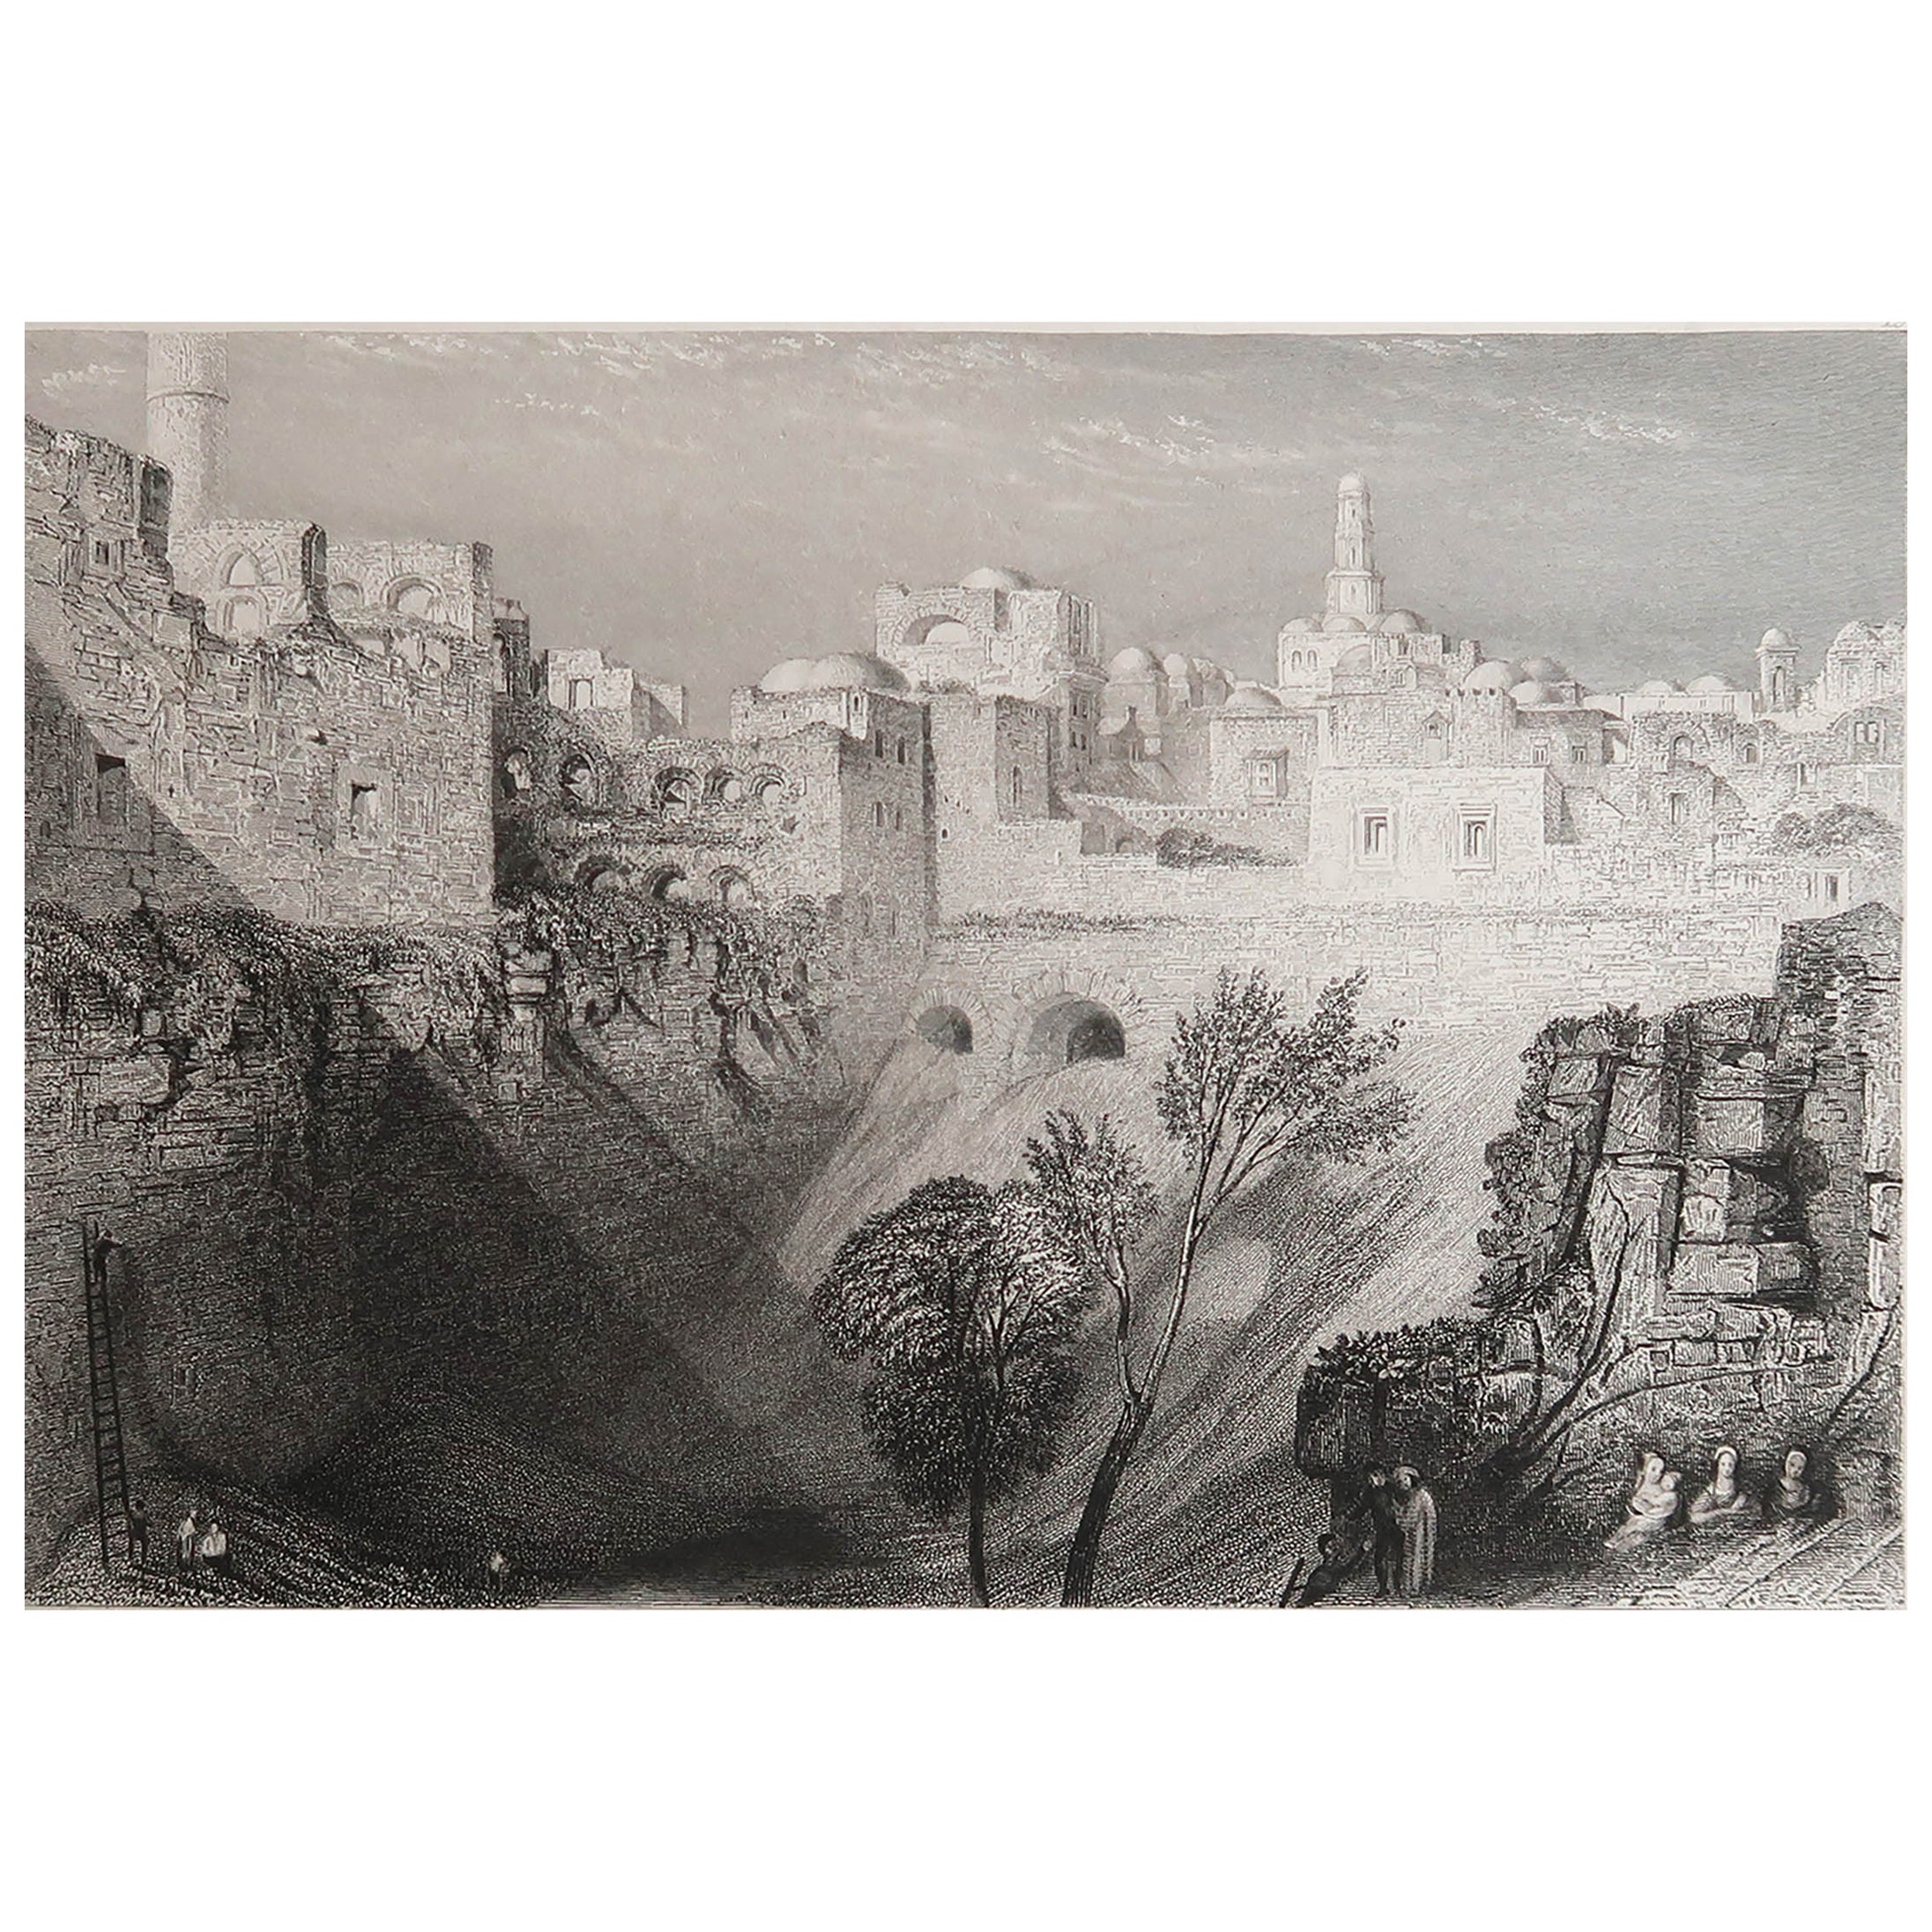 Original Antique Print of Jerusalem After J.M.W Turner. Dated 1834